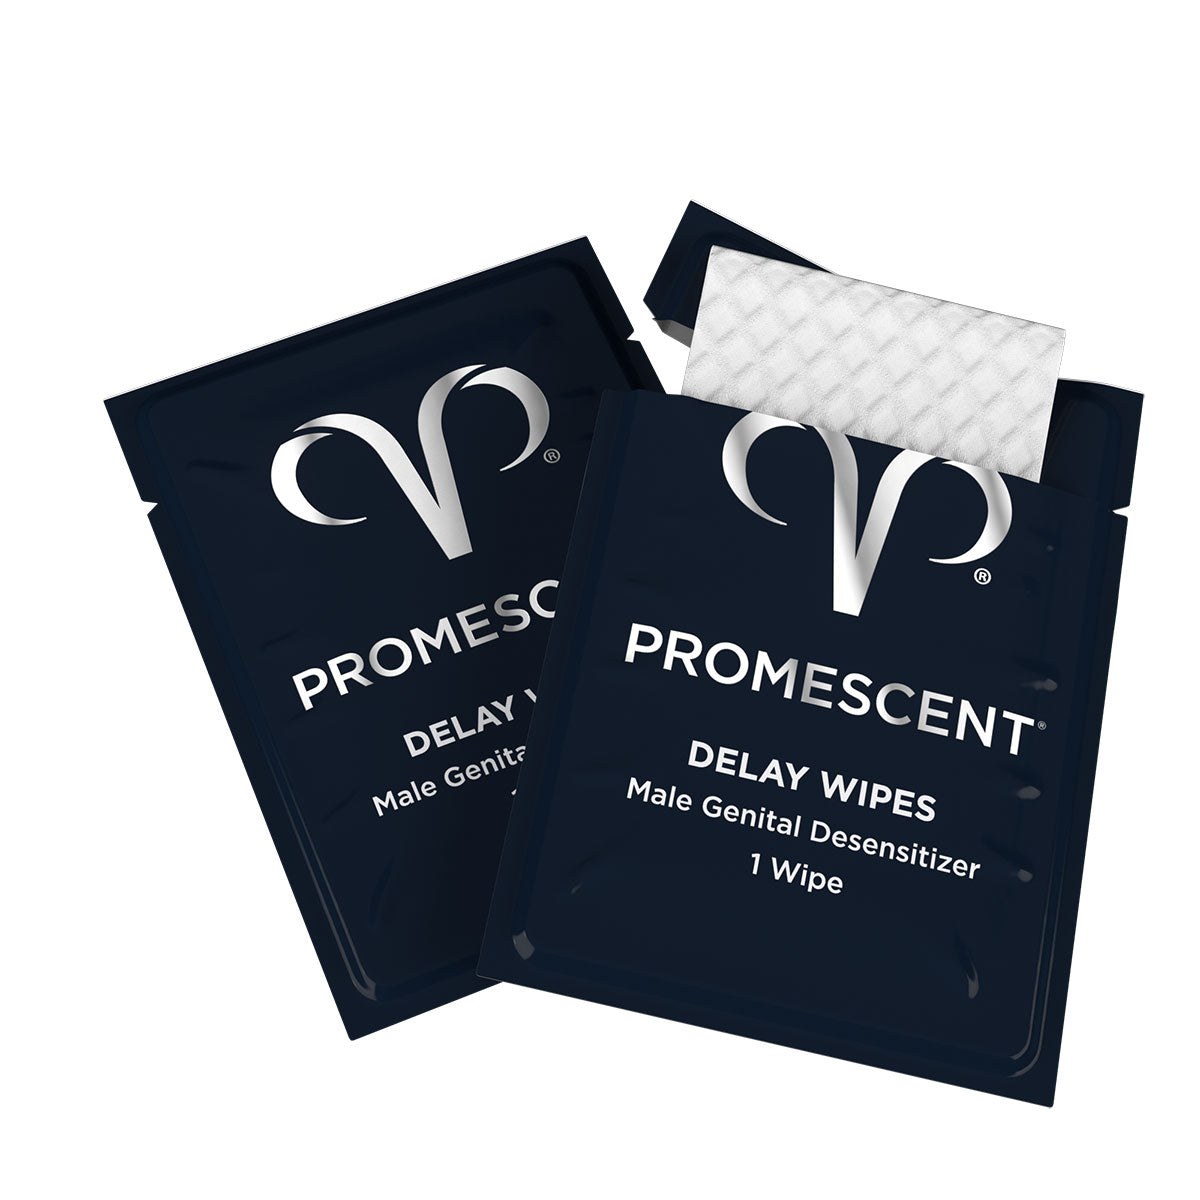 Promescent Delay Wipes 5ct